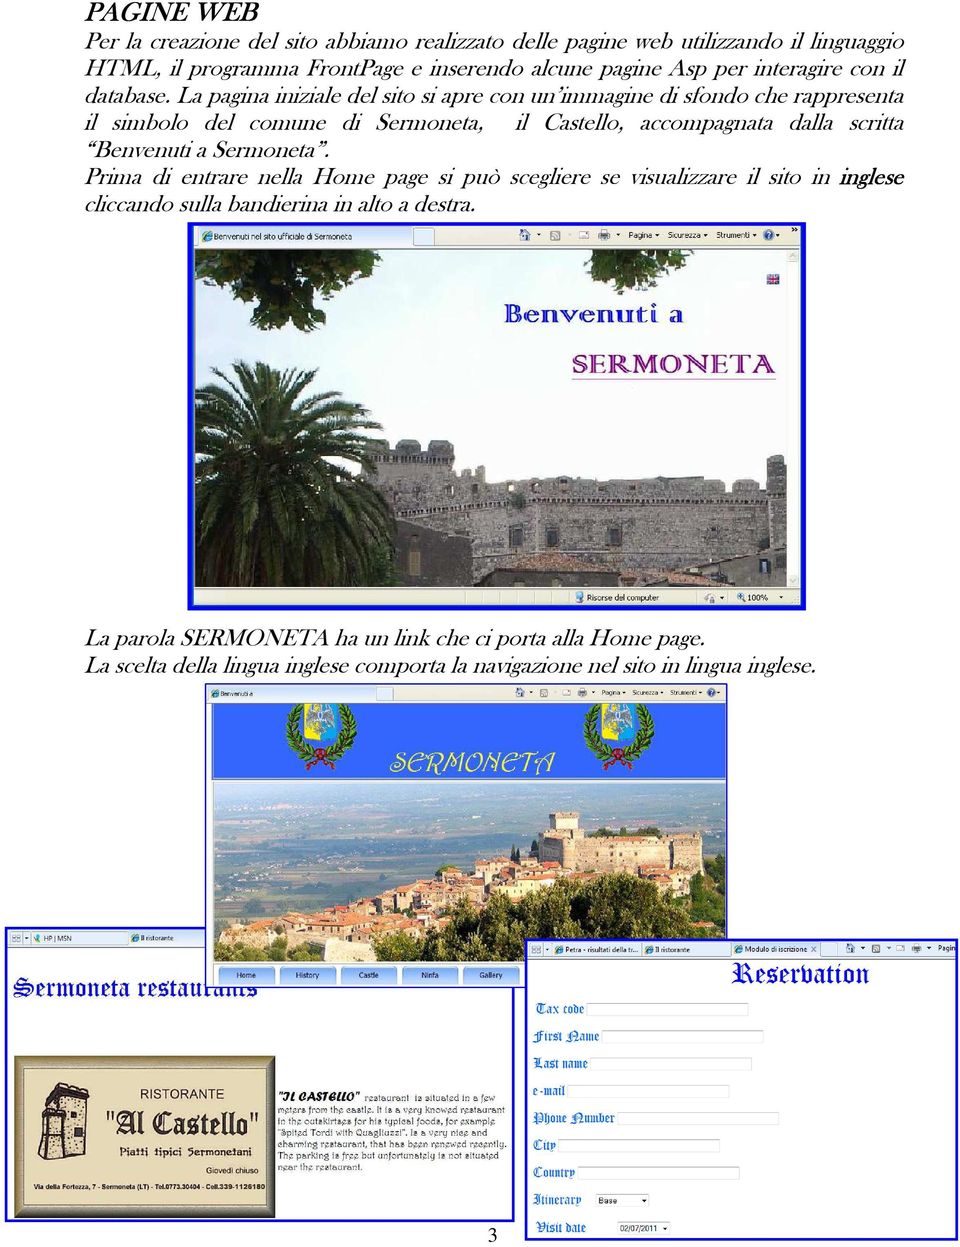 La pagina iniziale del sito si apre con un immagine di sfondo che rappresenta il simbolo del comune di Sermoneta, il Castello, accompagnata dalla scritta